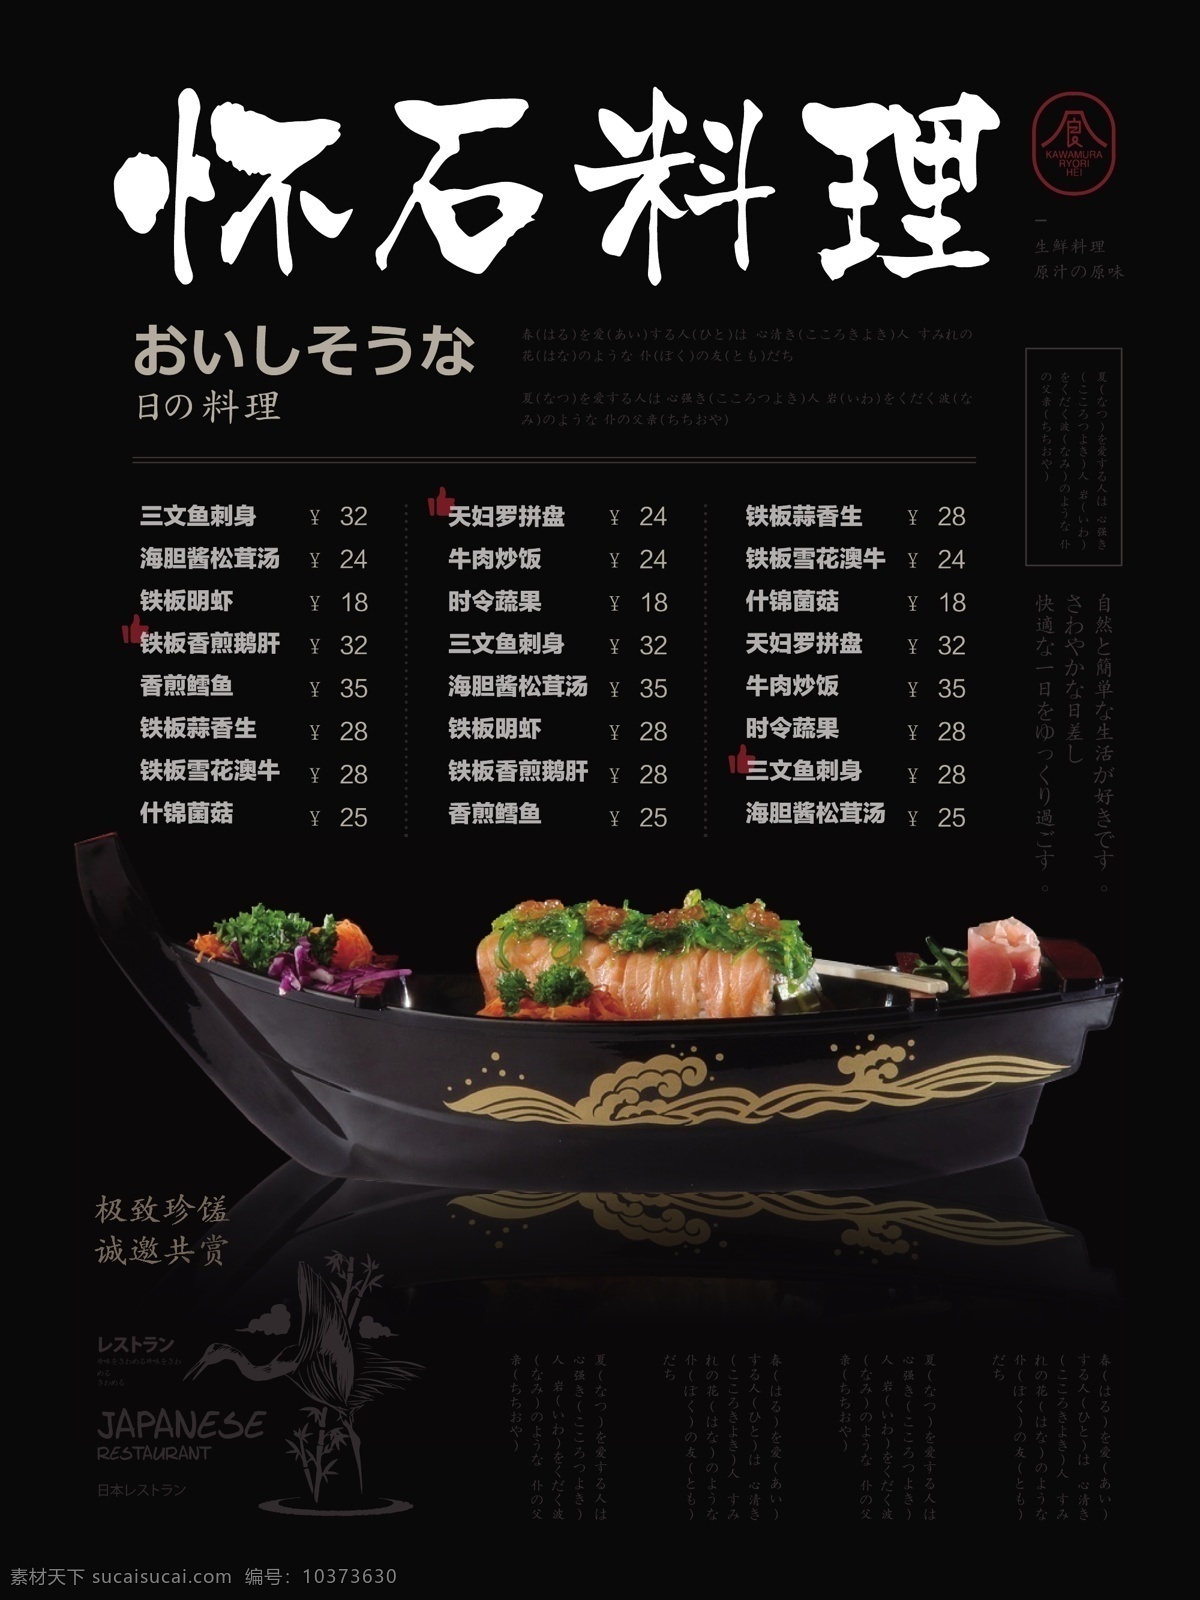 简约 风 日式 餐厅 菜单 简约风 日式餐厅 寿司 美食 健康 怀石料理